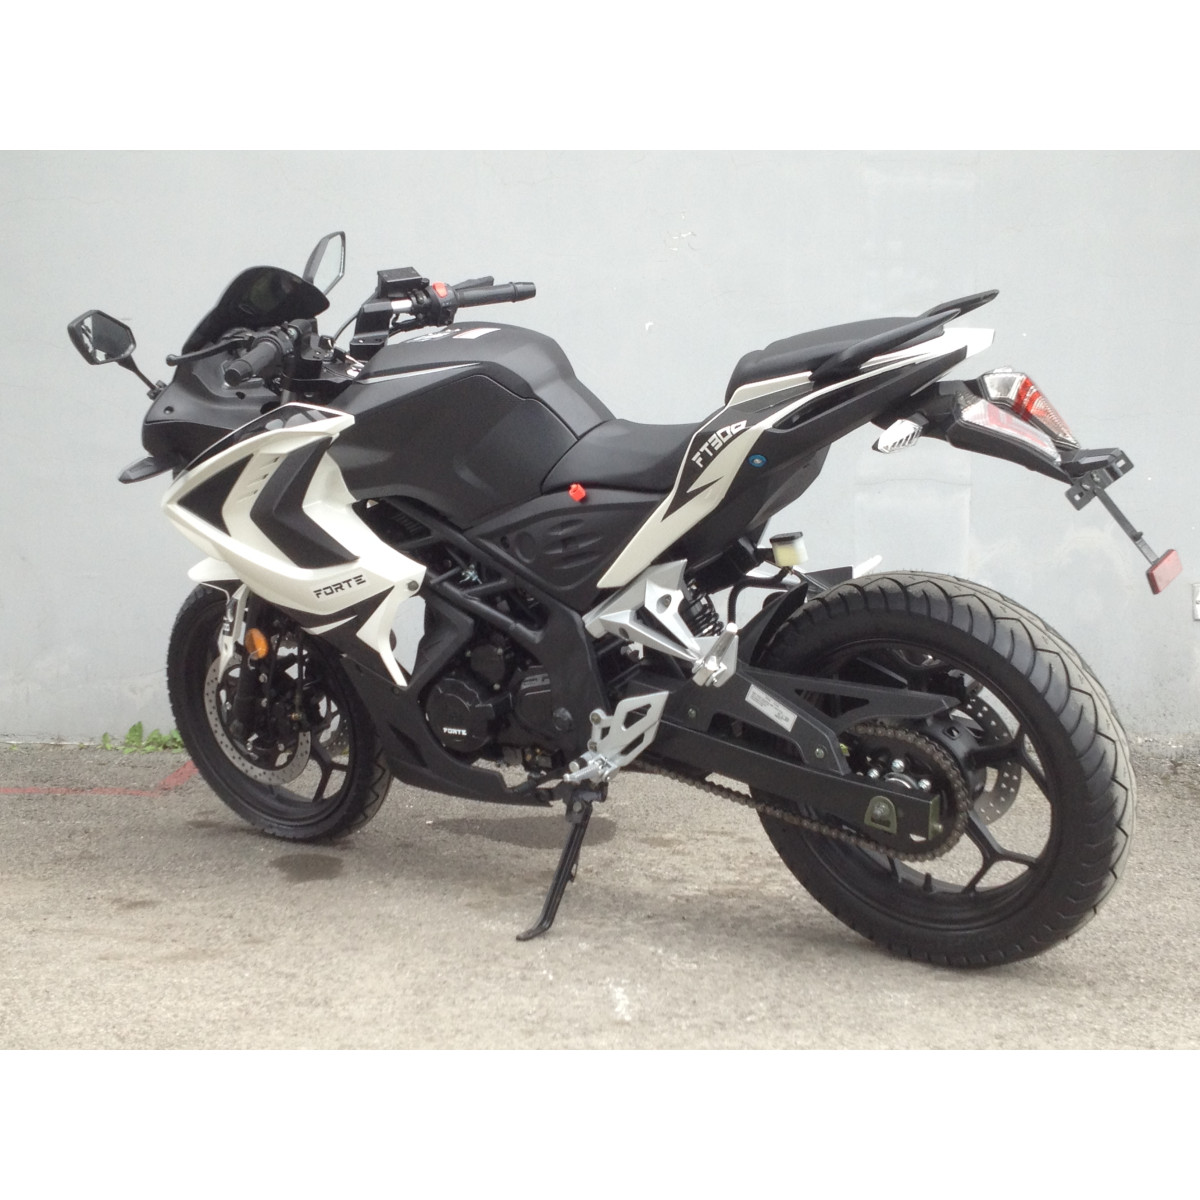 Мотоцикл FT300-R1 Forte чорно-білий